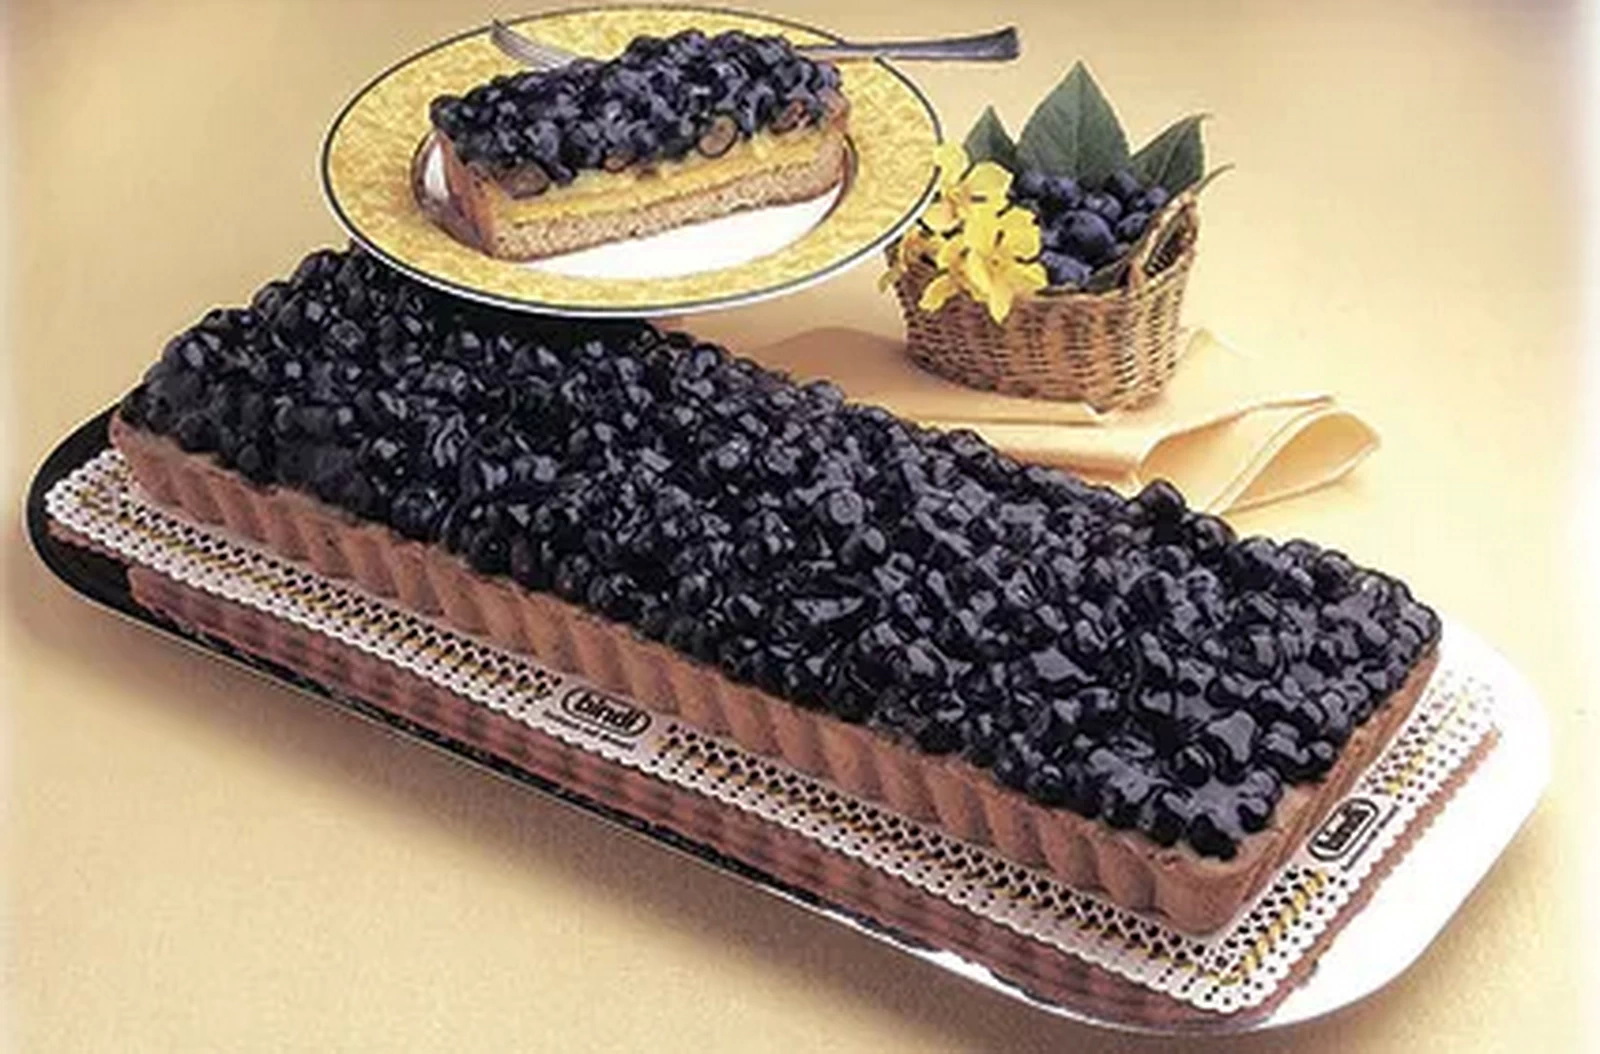 Торт черничный Bindi 1,15кг, Италия